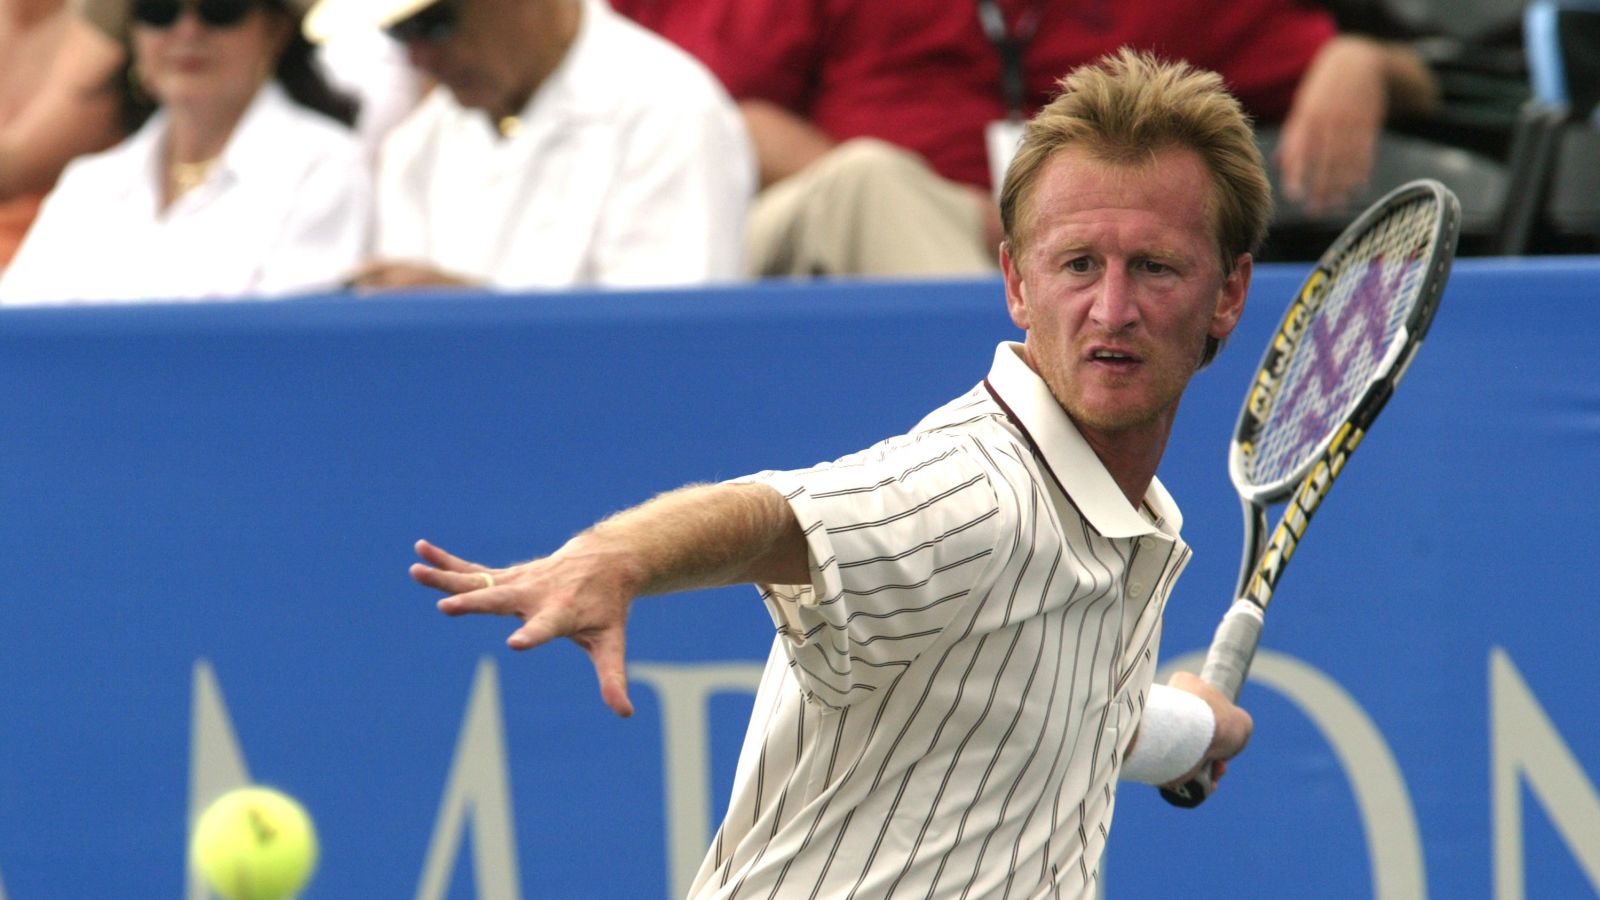 Der gebürtige Tscheche Petr Korda gehörte im Tennis seinerzeit zur Weltspitze. © Cynthia Lum/Getty Images